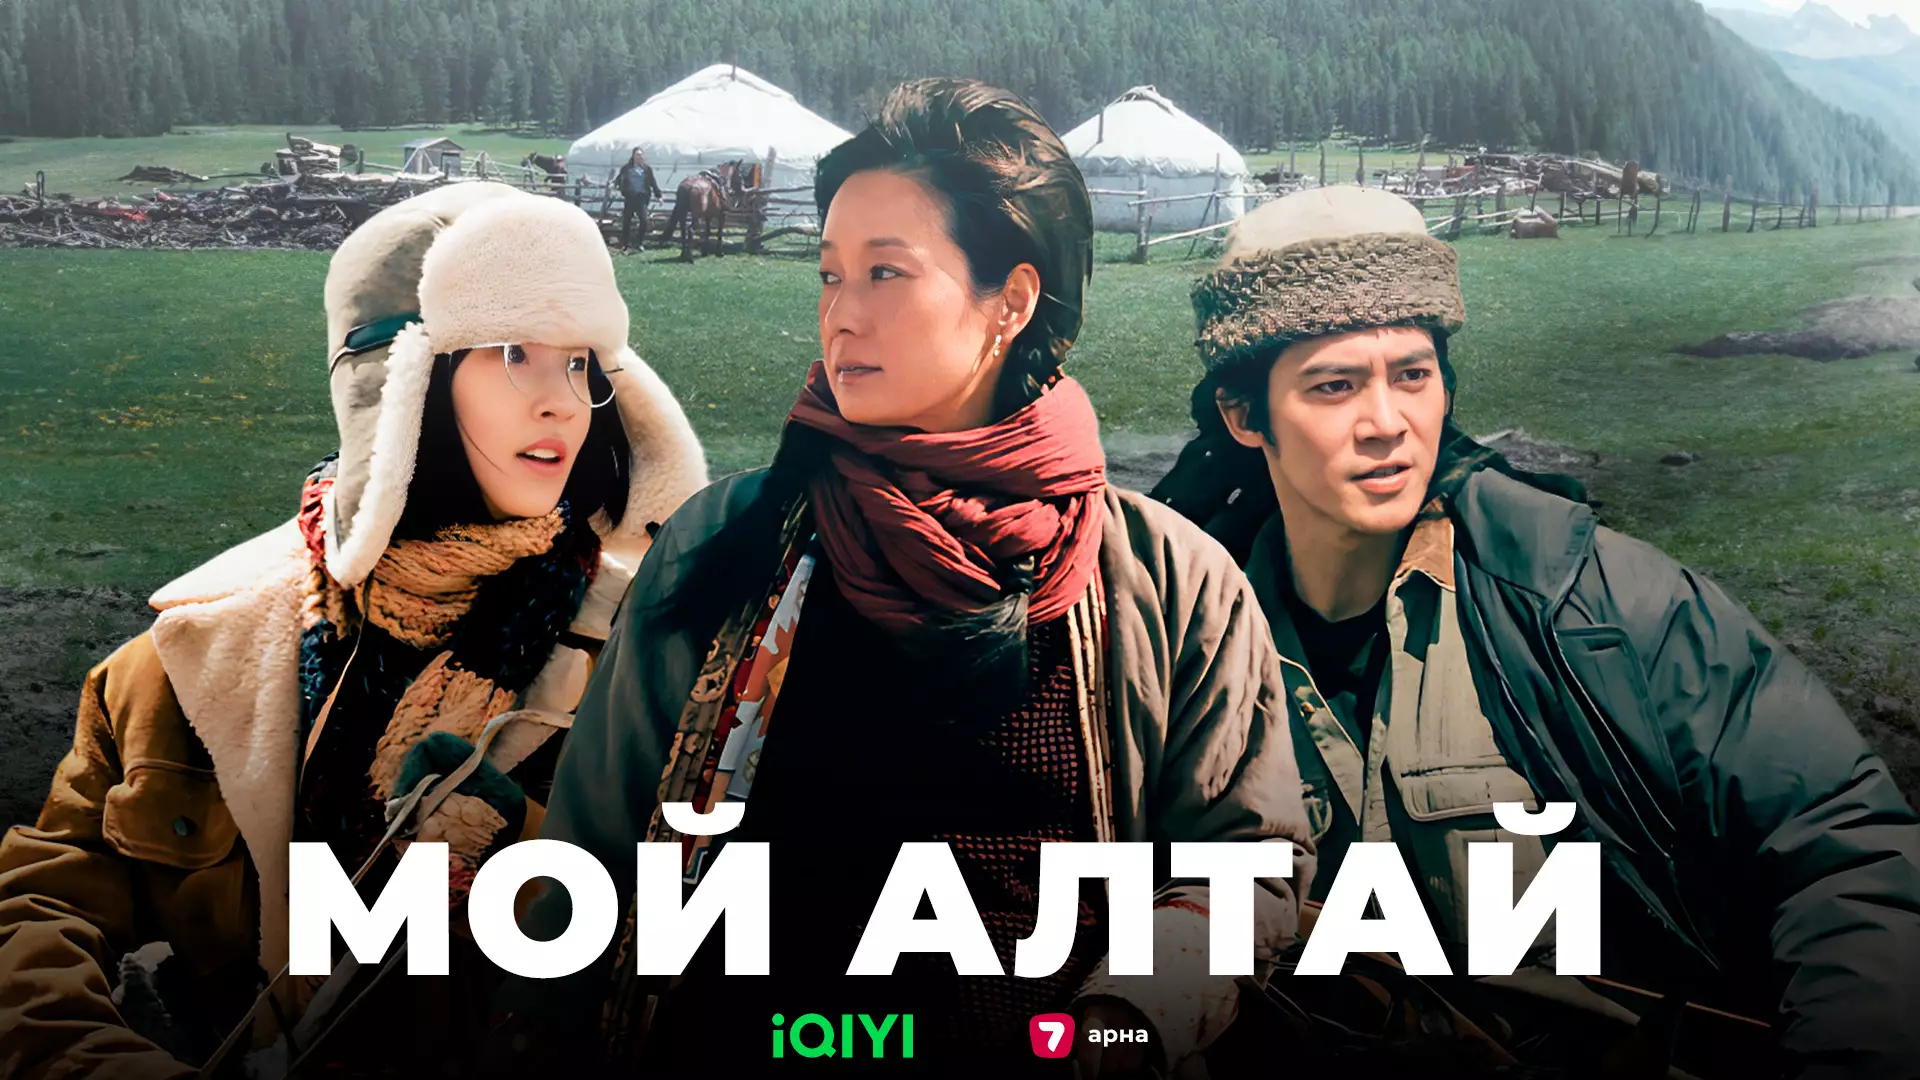 Китайскую дораму о жизни казахов покажут на казахстанском ТВ